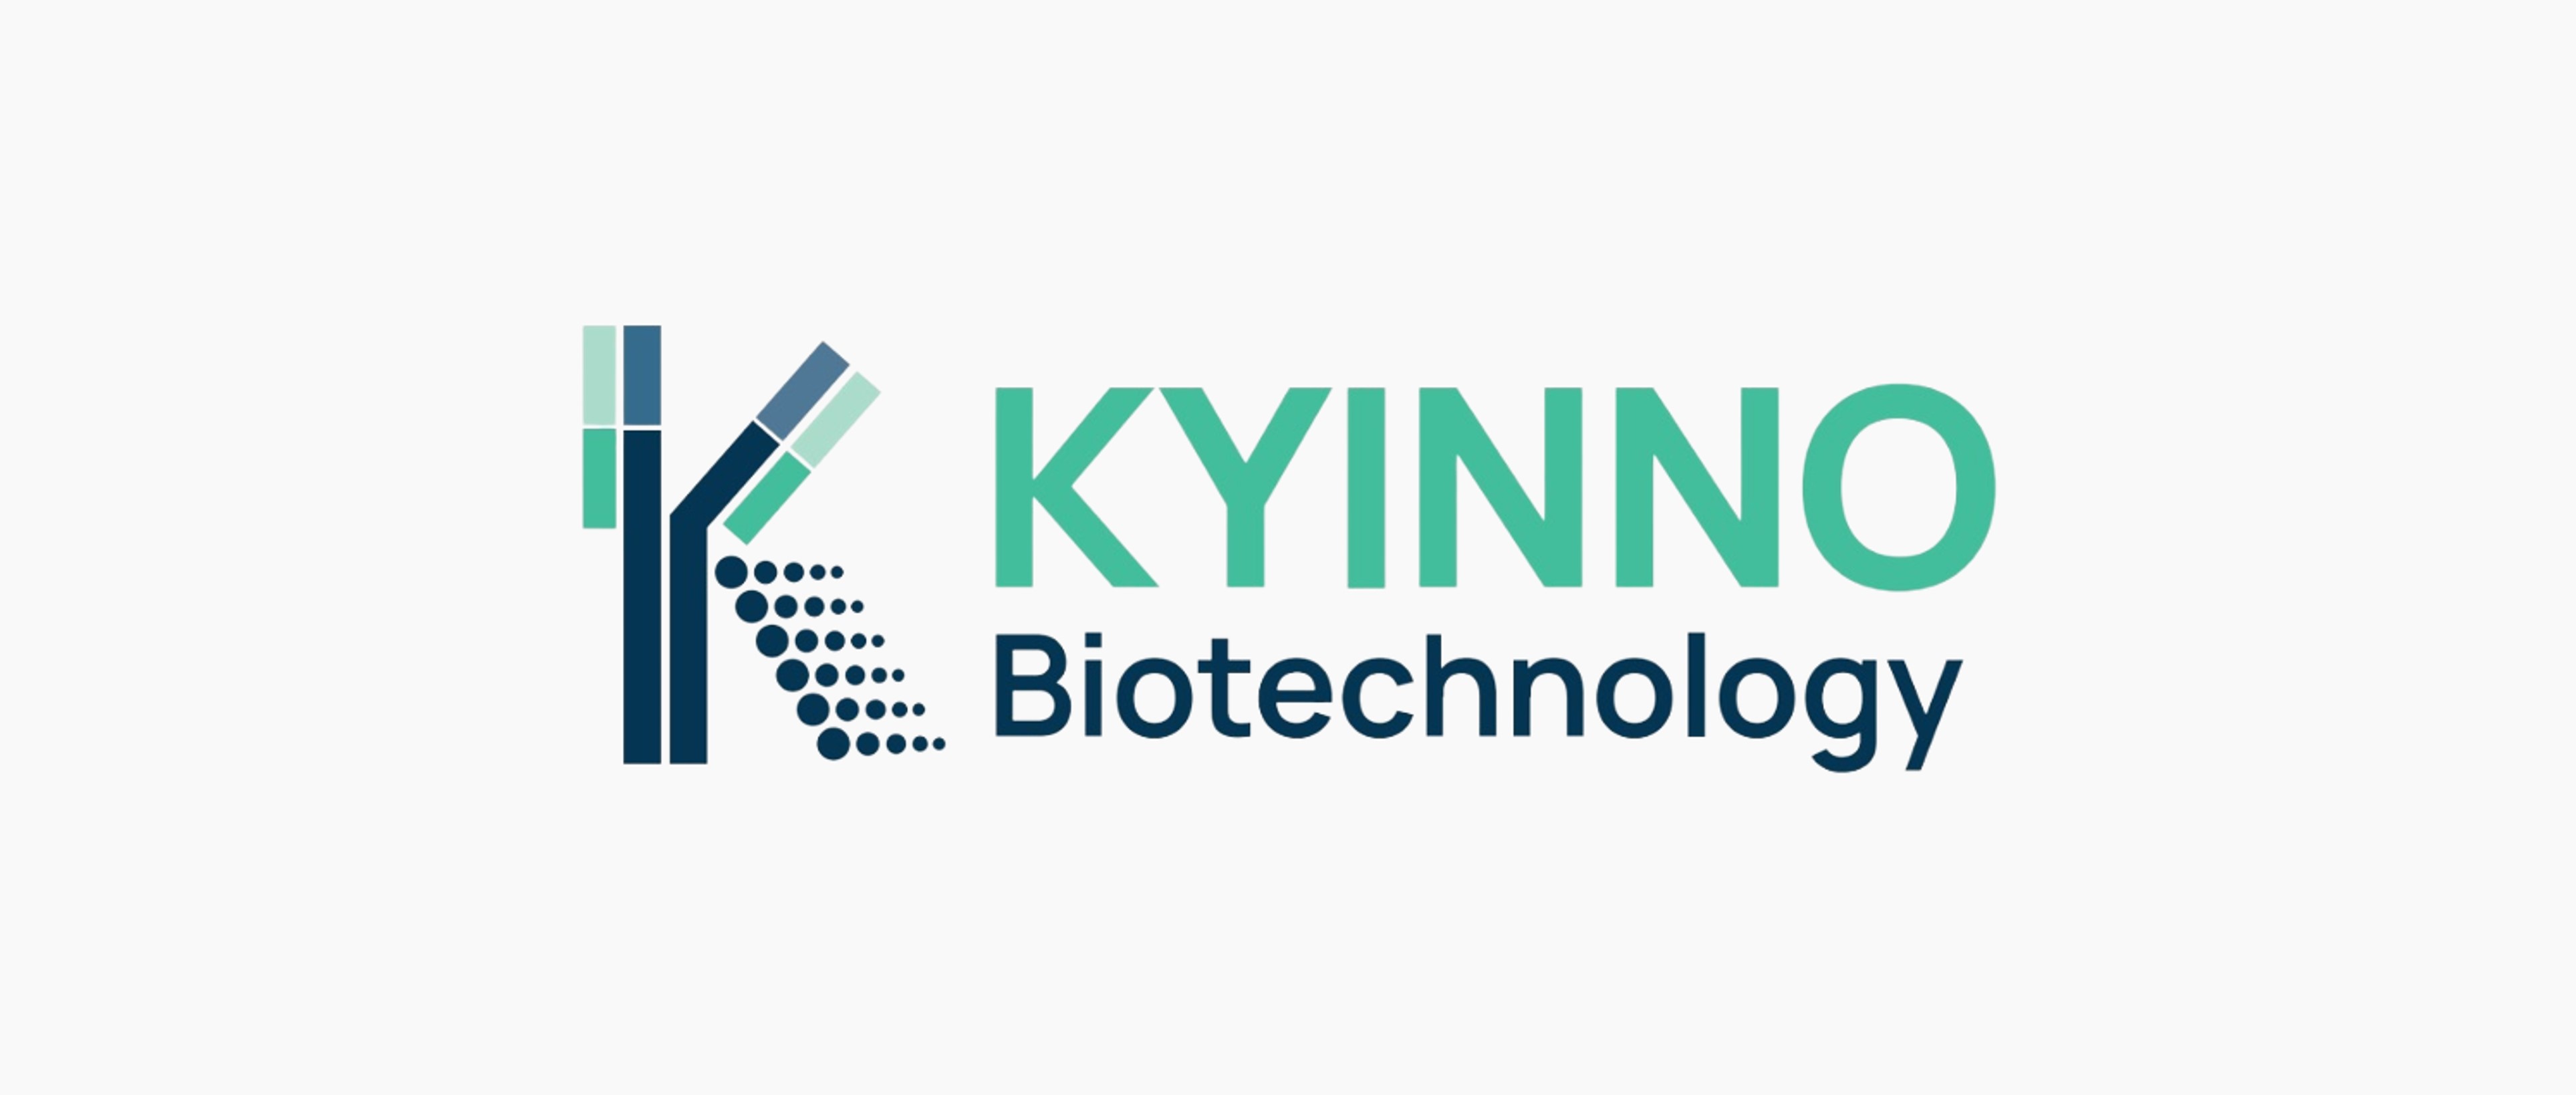 KYINNO Biotechnology